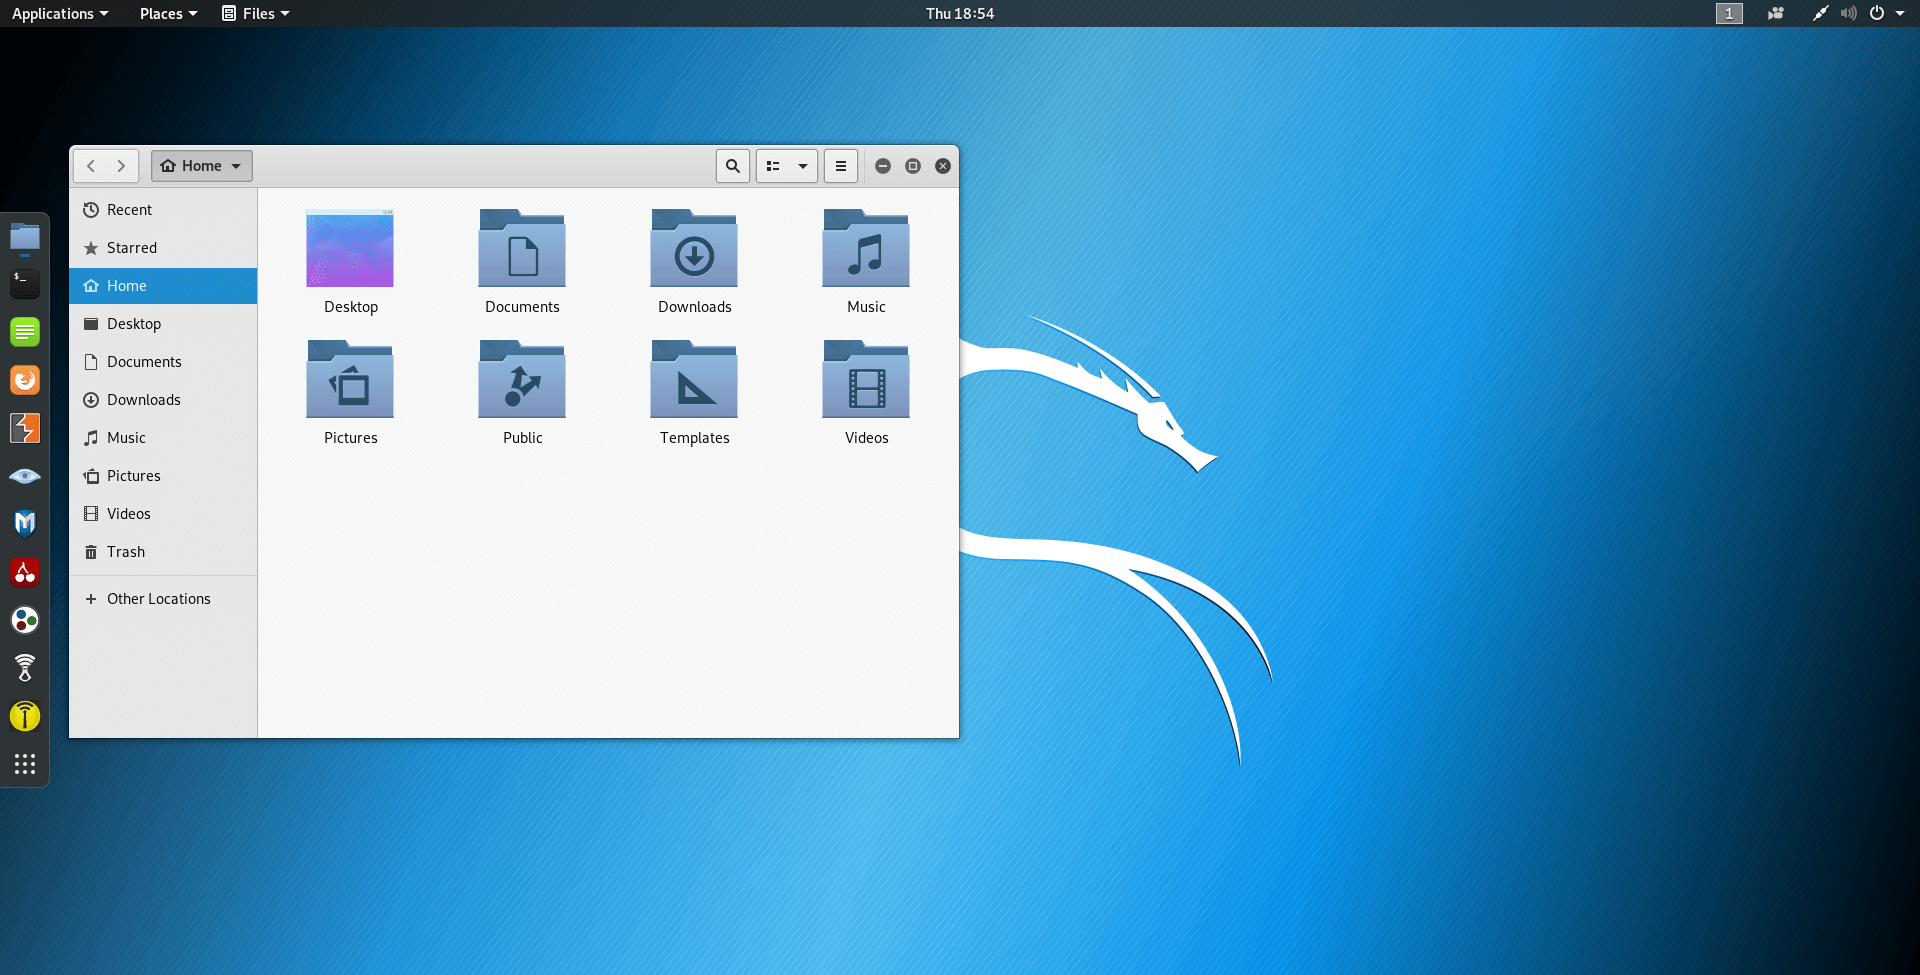 download kali linux for windows 10 64 bit